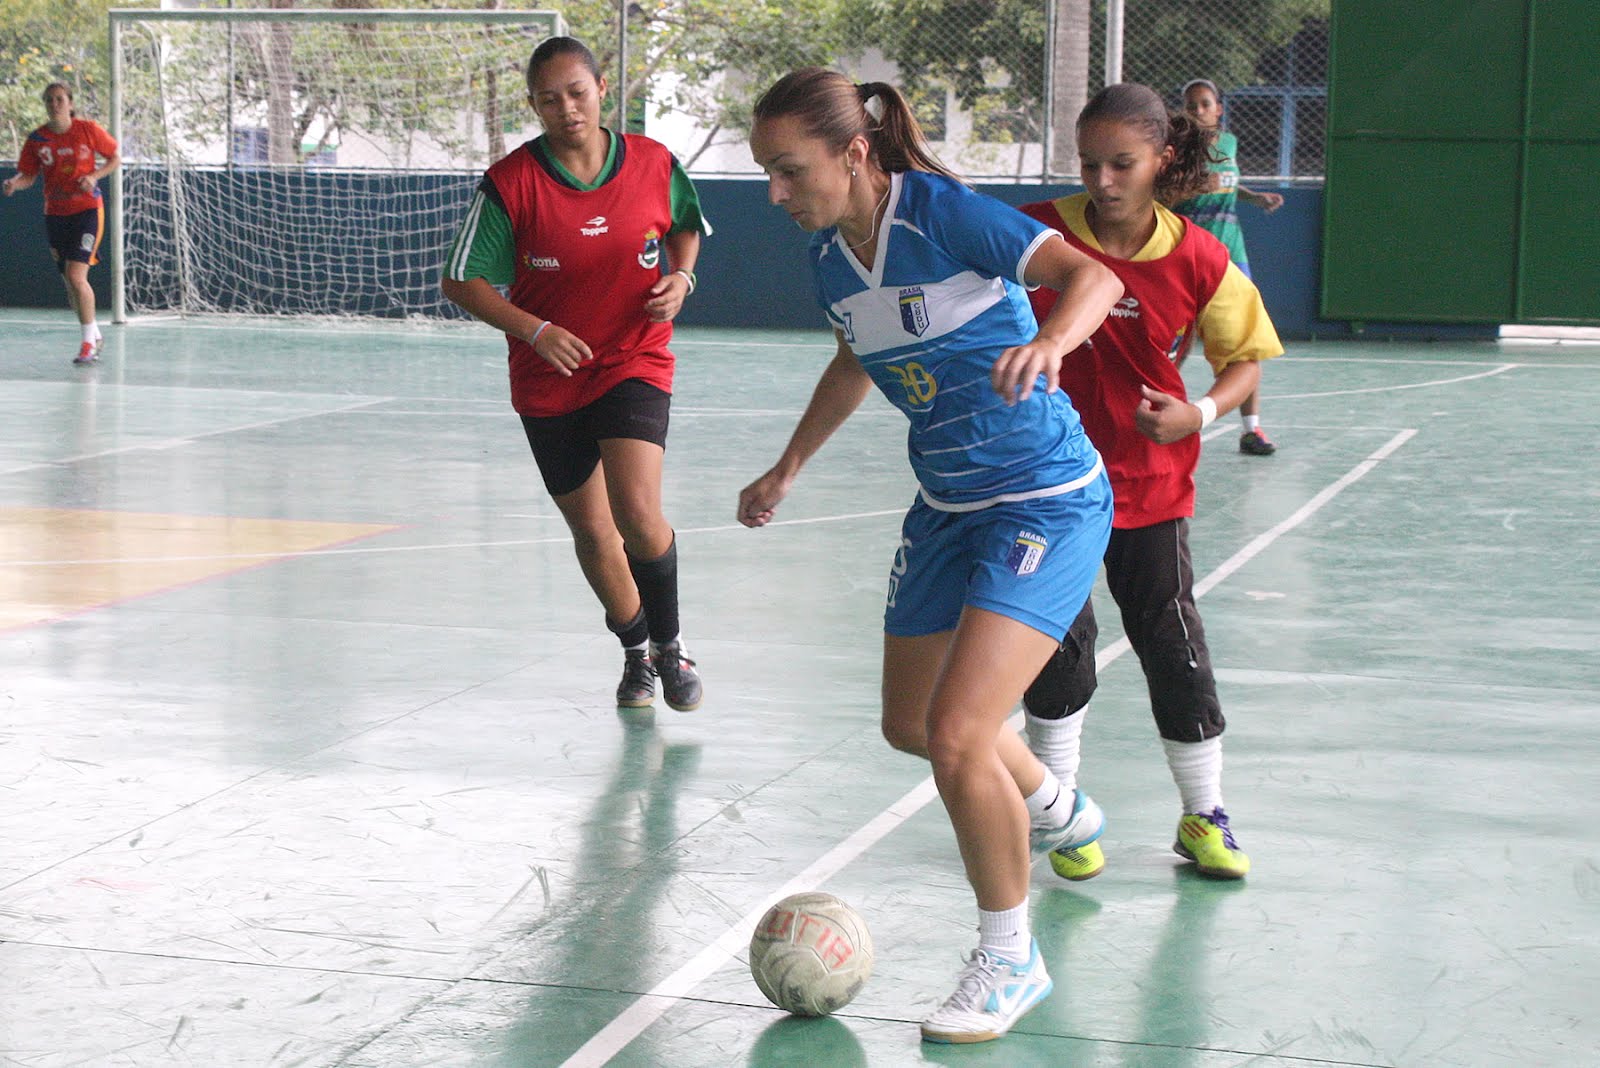 Futebol Feminino jogou domingo pelo Campeonato Paulista - Prefeitura da  Estância Turística de Embu das Artes